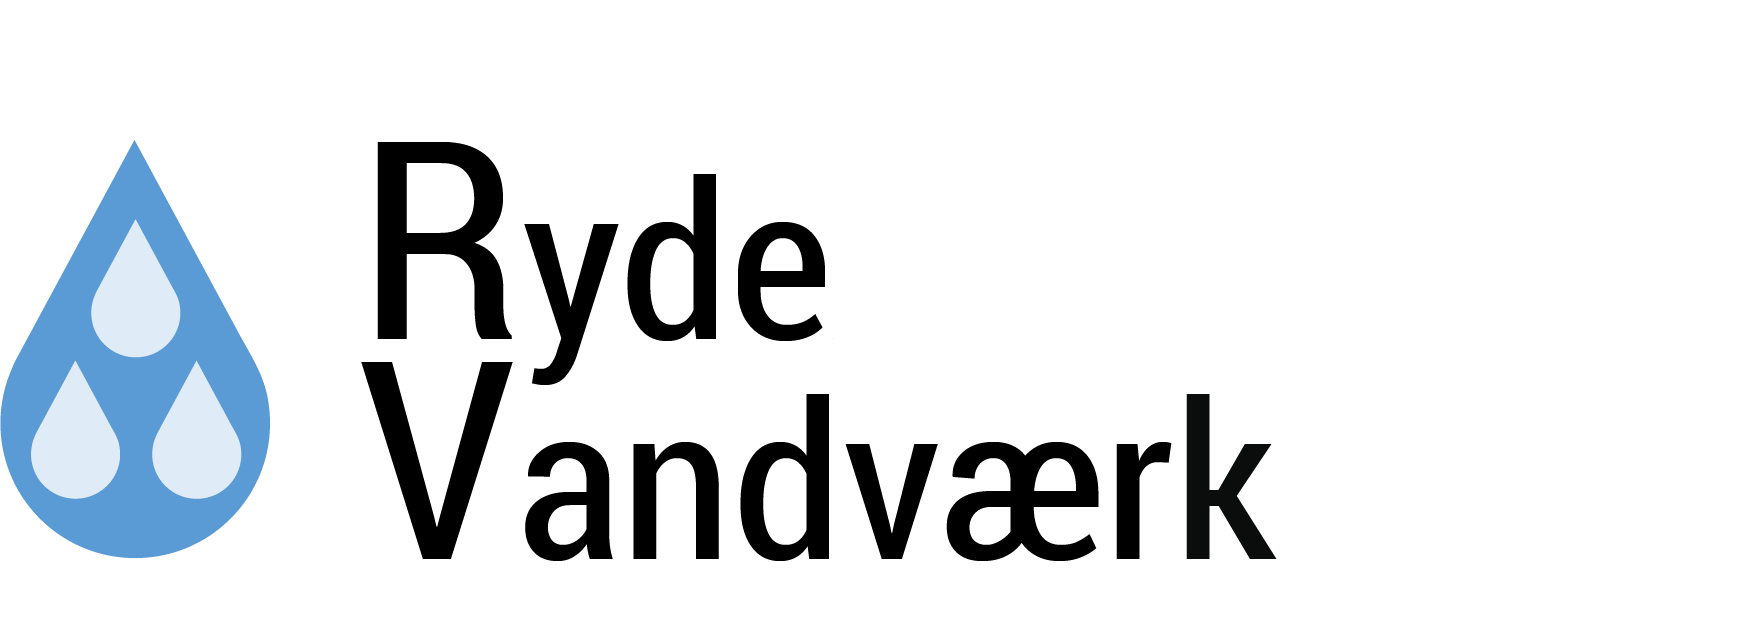 Logo_sorttekst